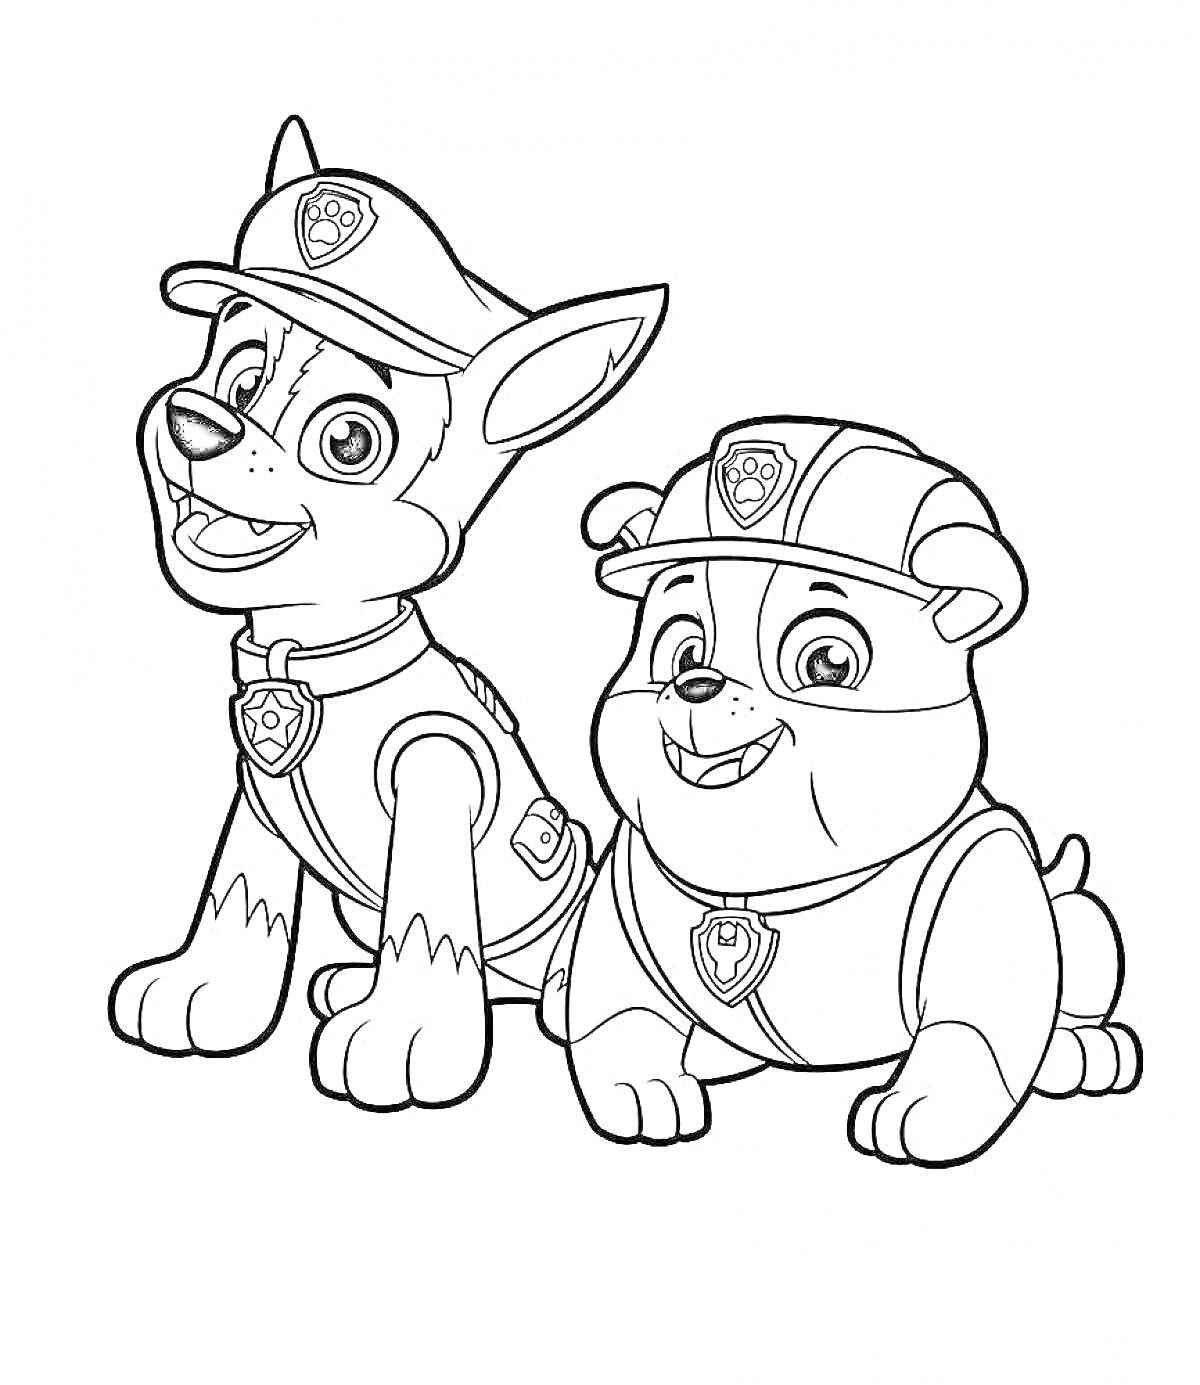 Раскраска Два щенка из Щенячьего патруля в униформе